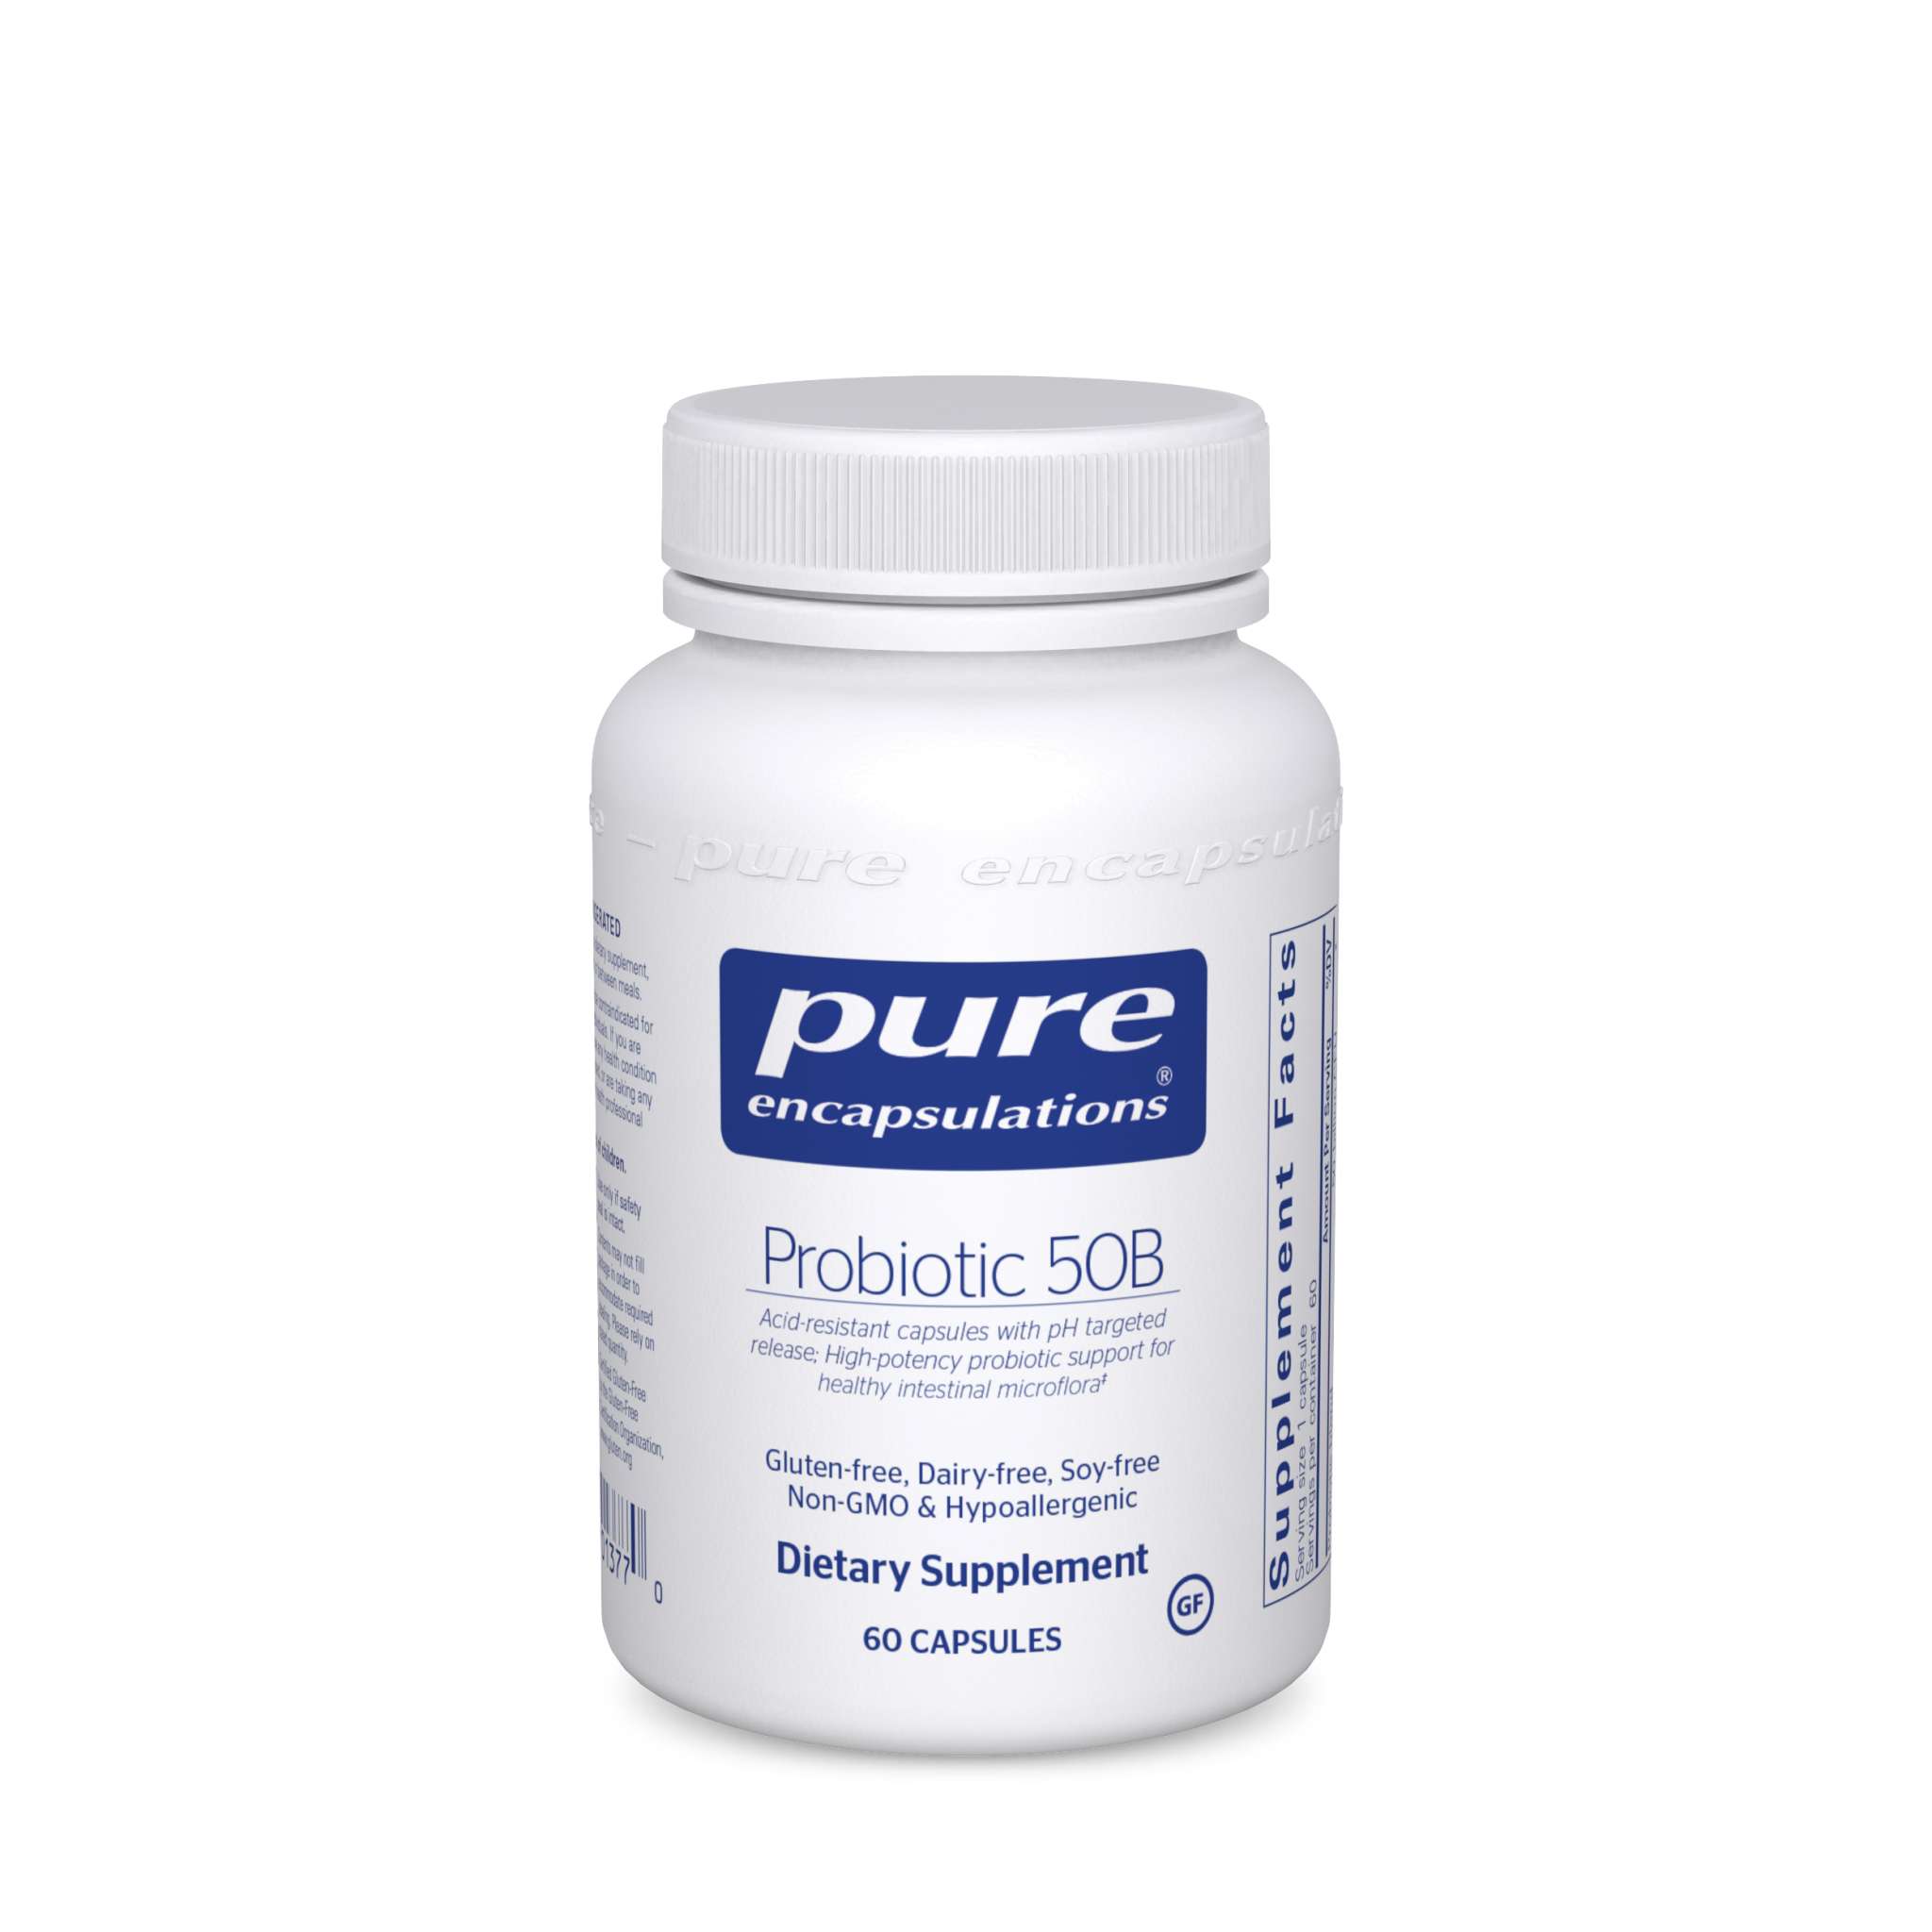 Pure Encapsulations - Probiotic 50b